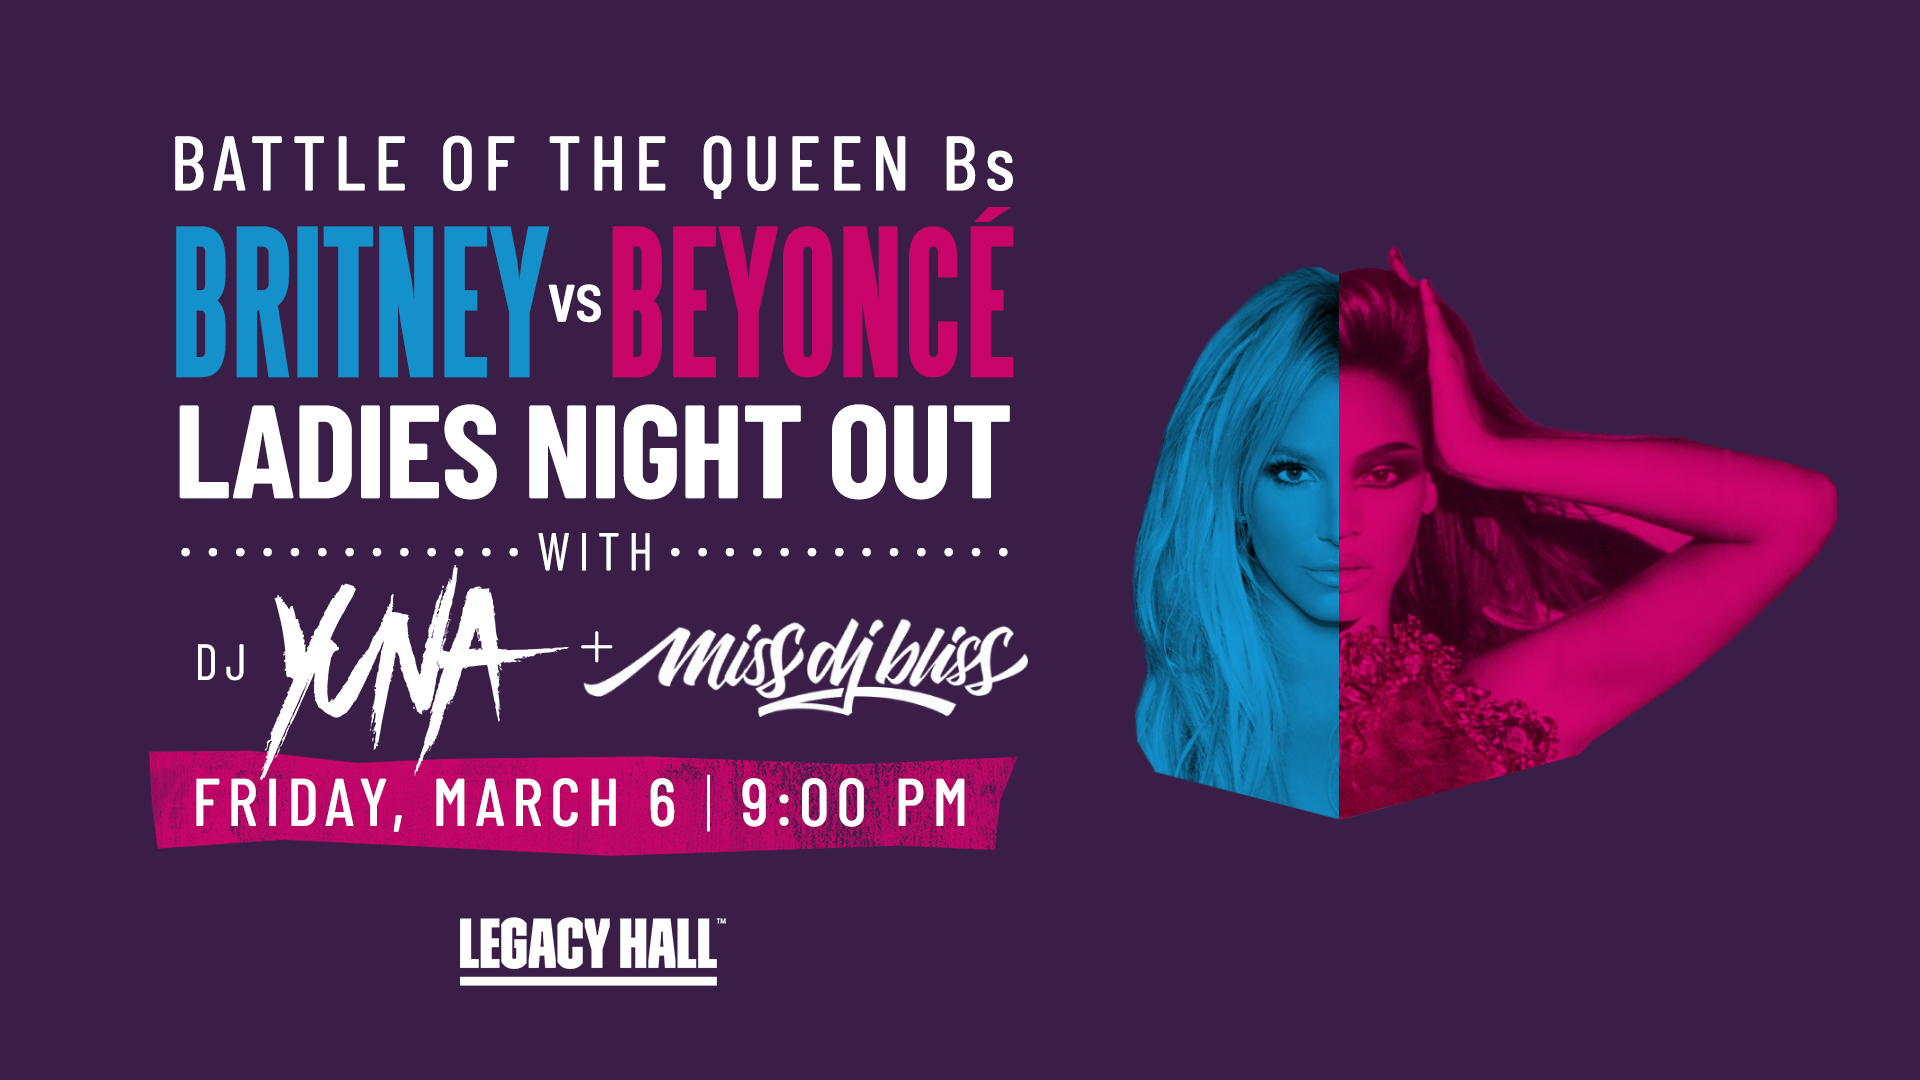 Britney vs. Beyonce Ladies Night Out - hero